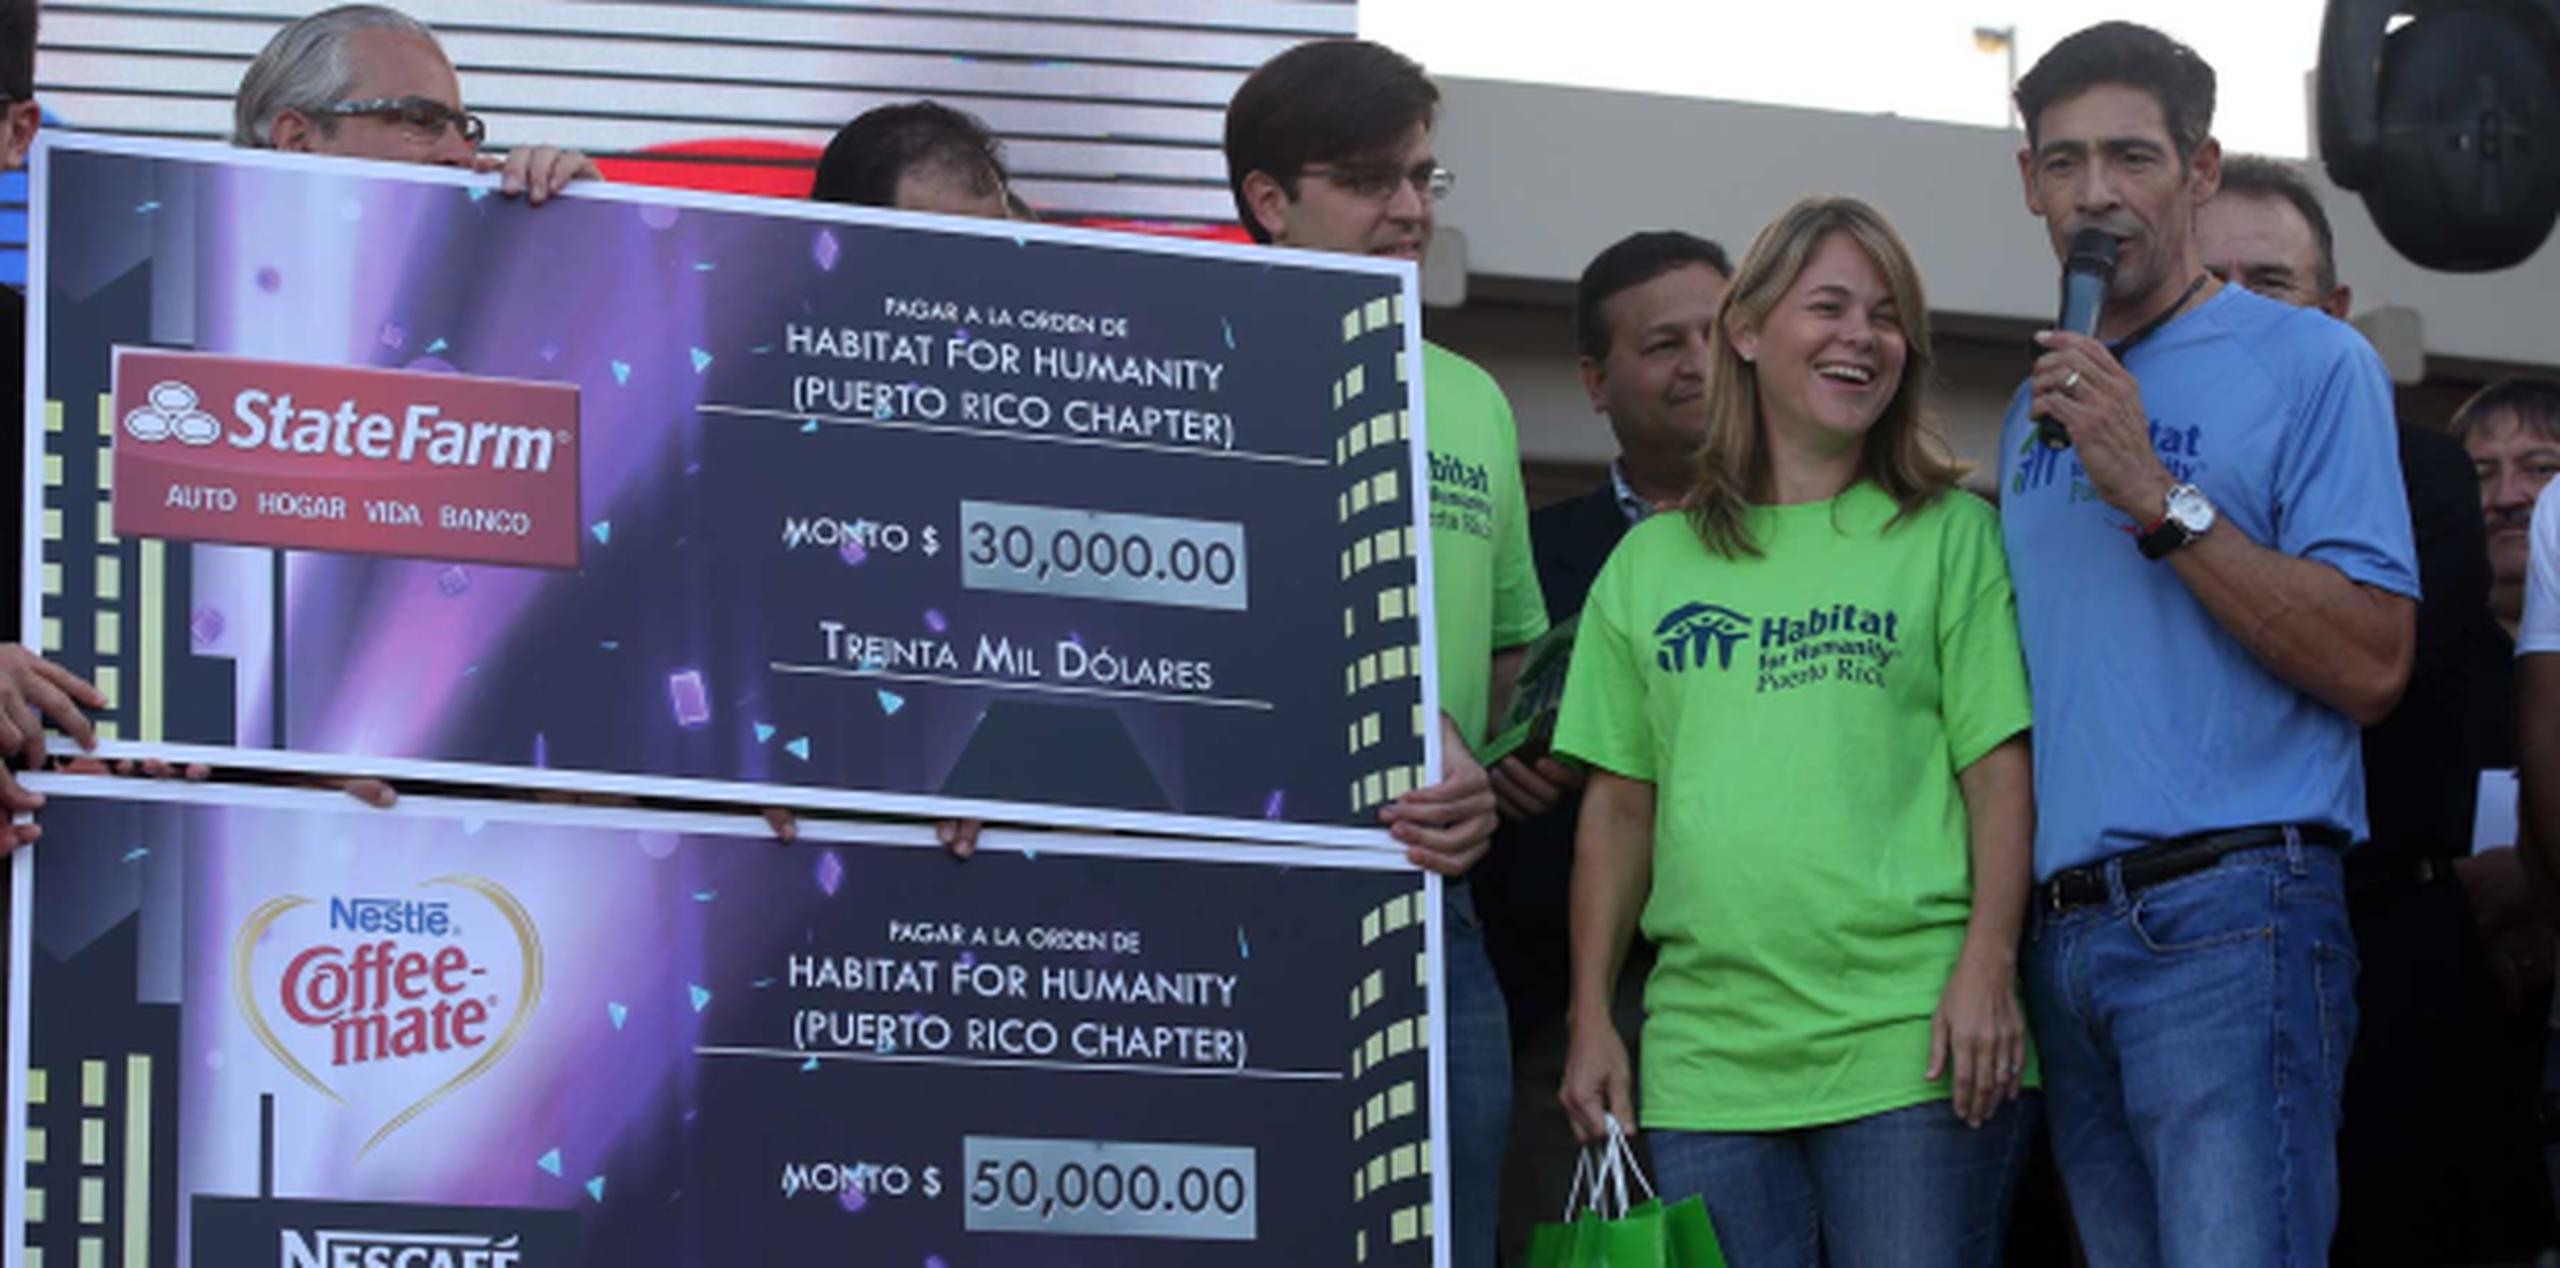 Lozada aprovechó la visita para hacer entrega del donativo de $80,000 a la fundación sin fines de lucro Habitat for Humanity Puerto Rico, por la cual bailó en el reality show Mira quién baila. (david.villafane@gfrmedia.com)